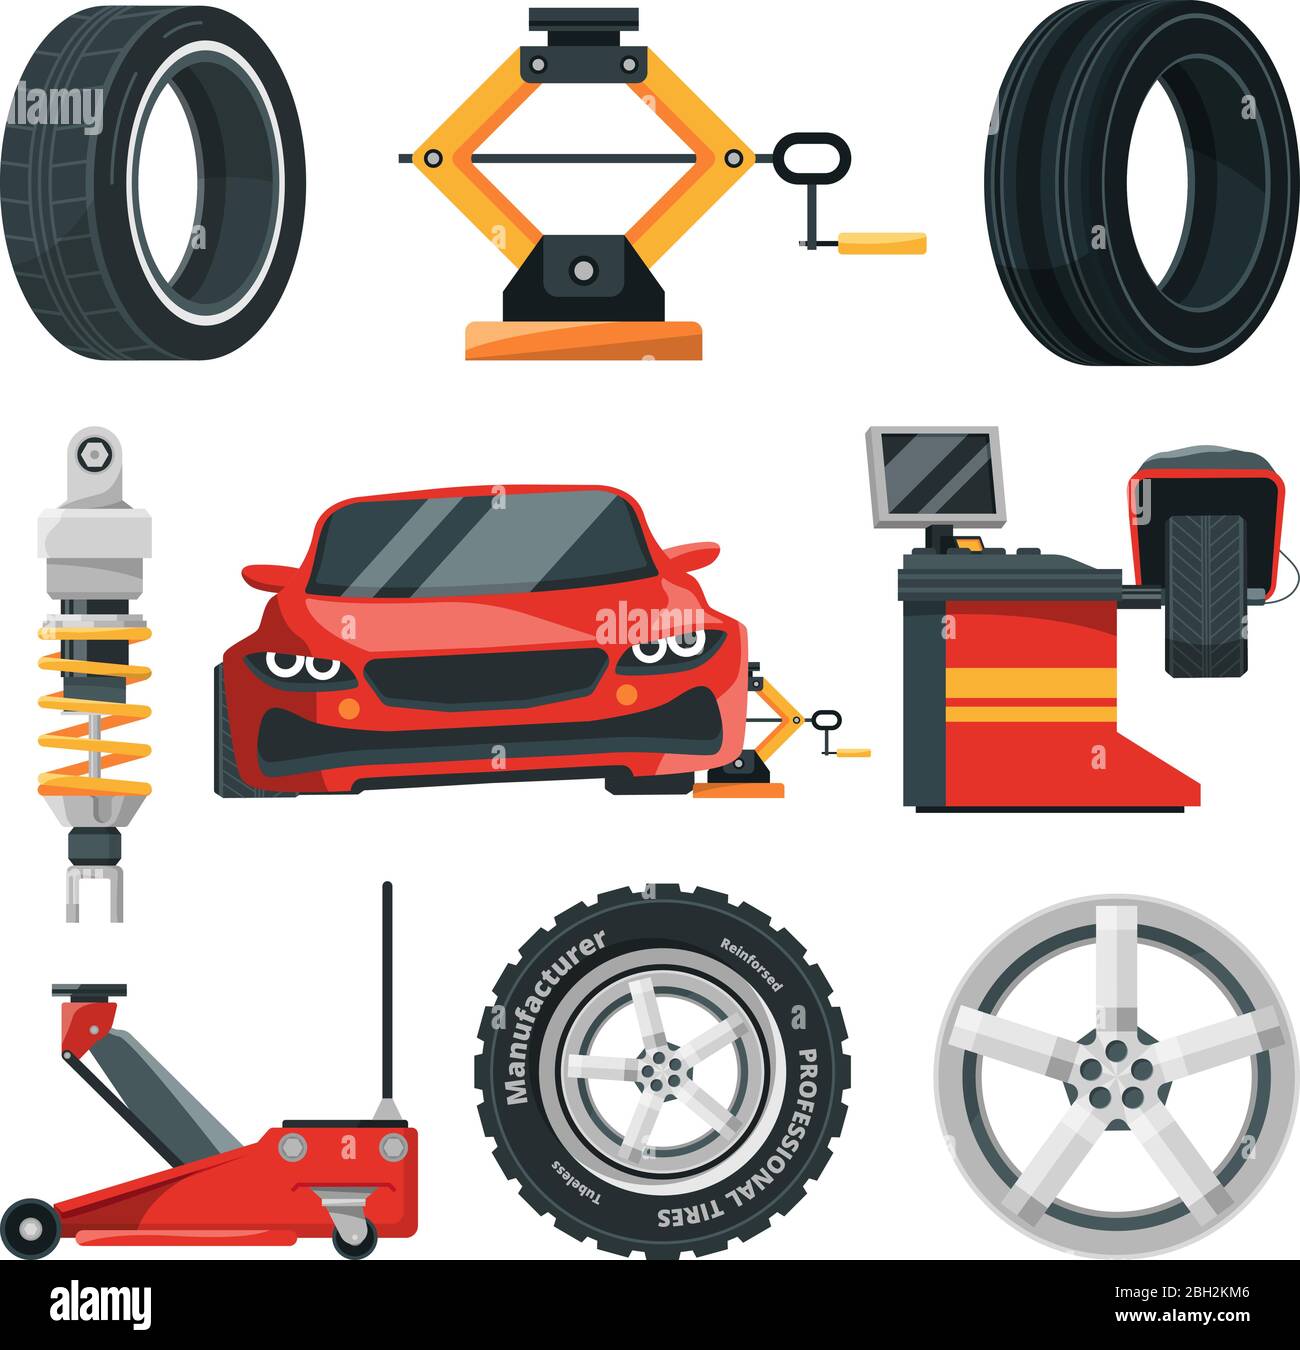 Abbildungen des Reifenservice. Auto-Service-Reifen und Reparatur-Rad, Kfz-Wartung Garage Vektor Stock Vektor